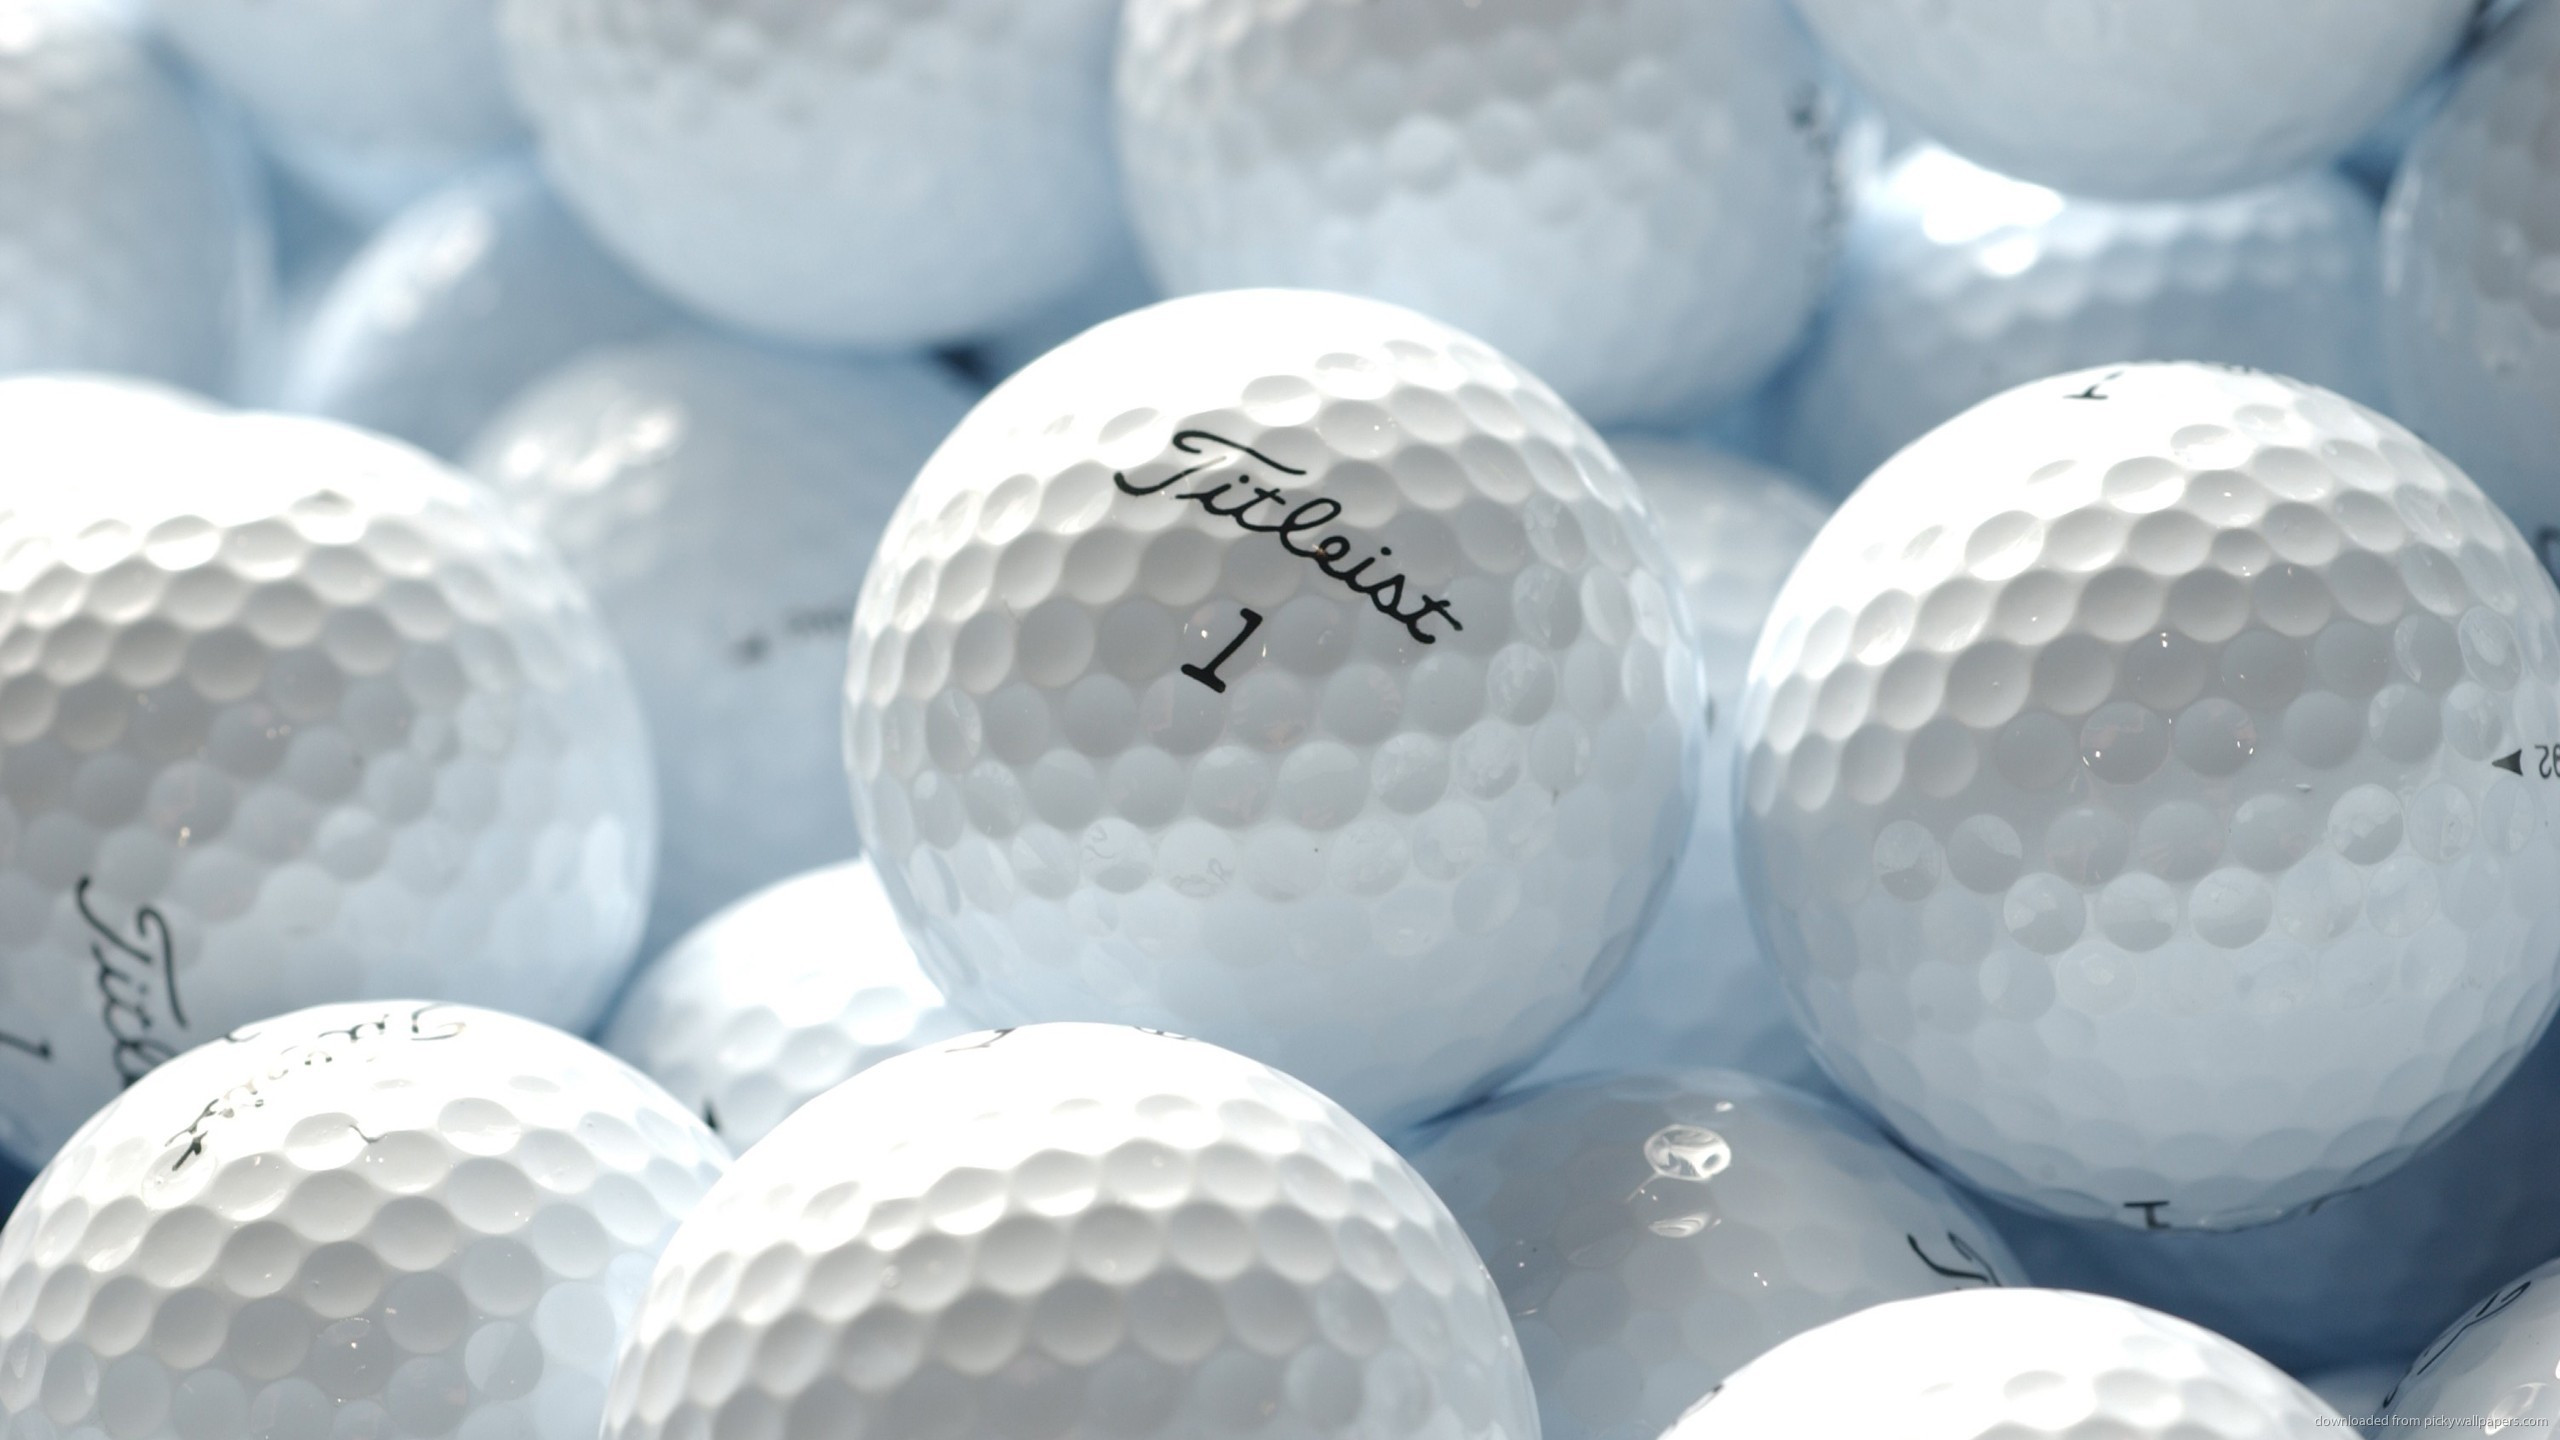 Titleist Golf Balls HD Desktop Mobile Wallpaper Background 9walls